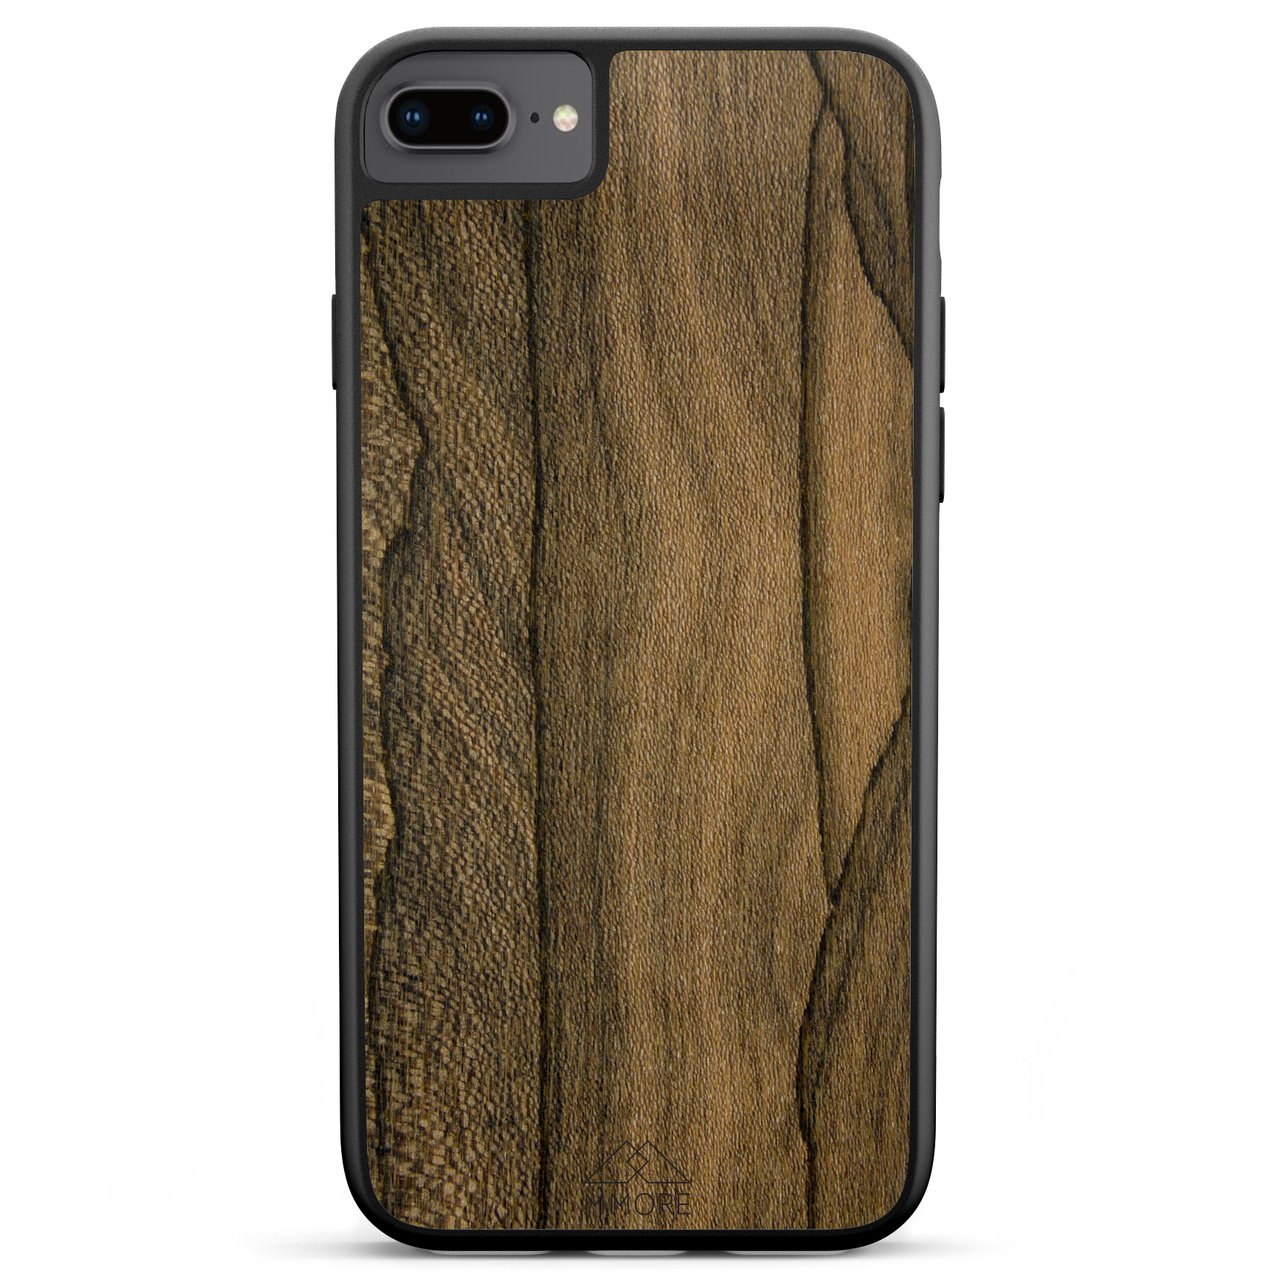 Custodia per telefono in legno Ziricote per iPhone 7 Plus